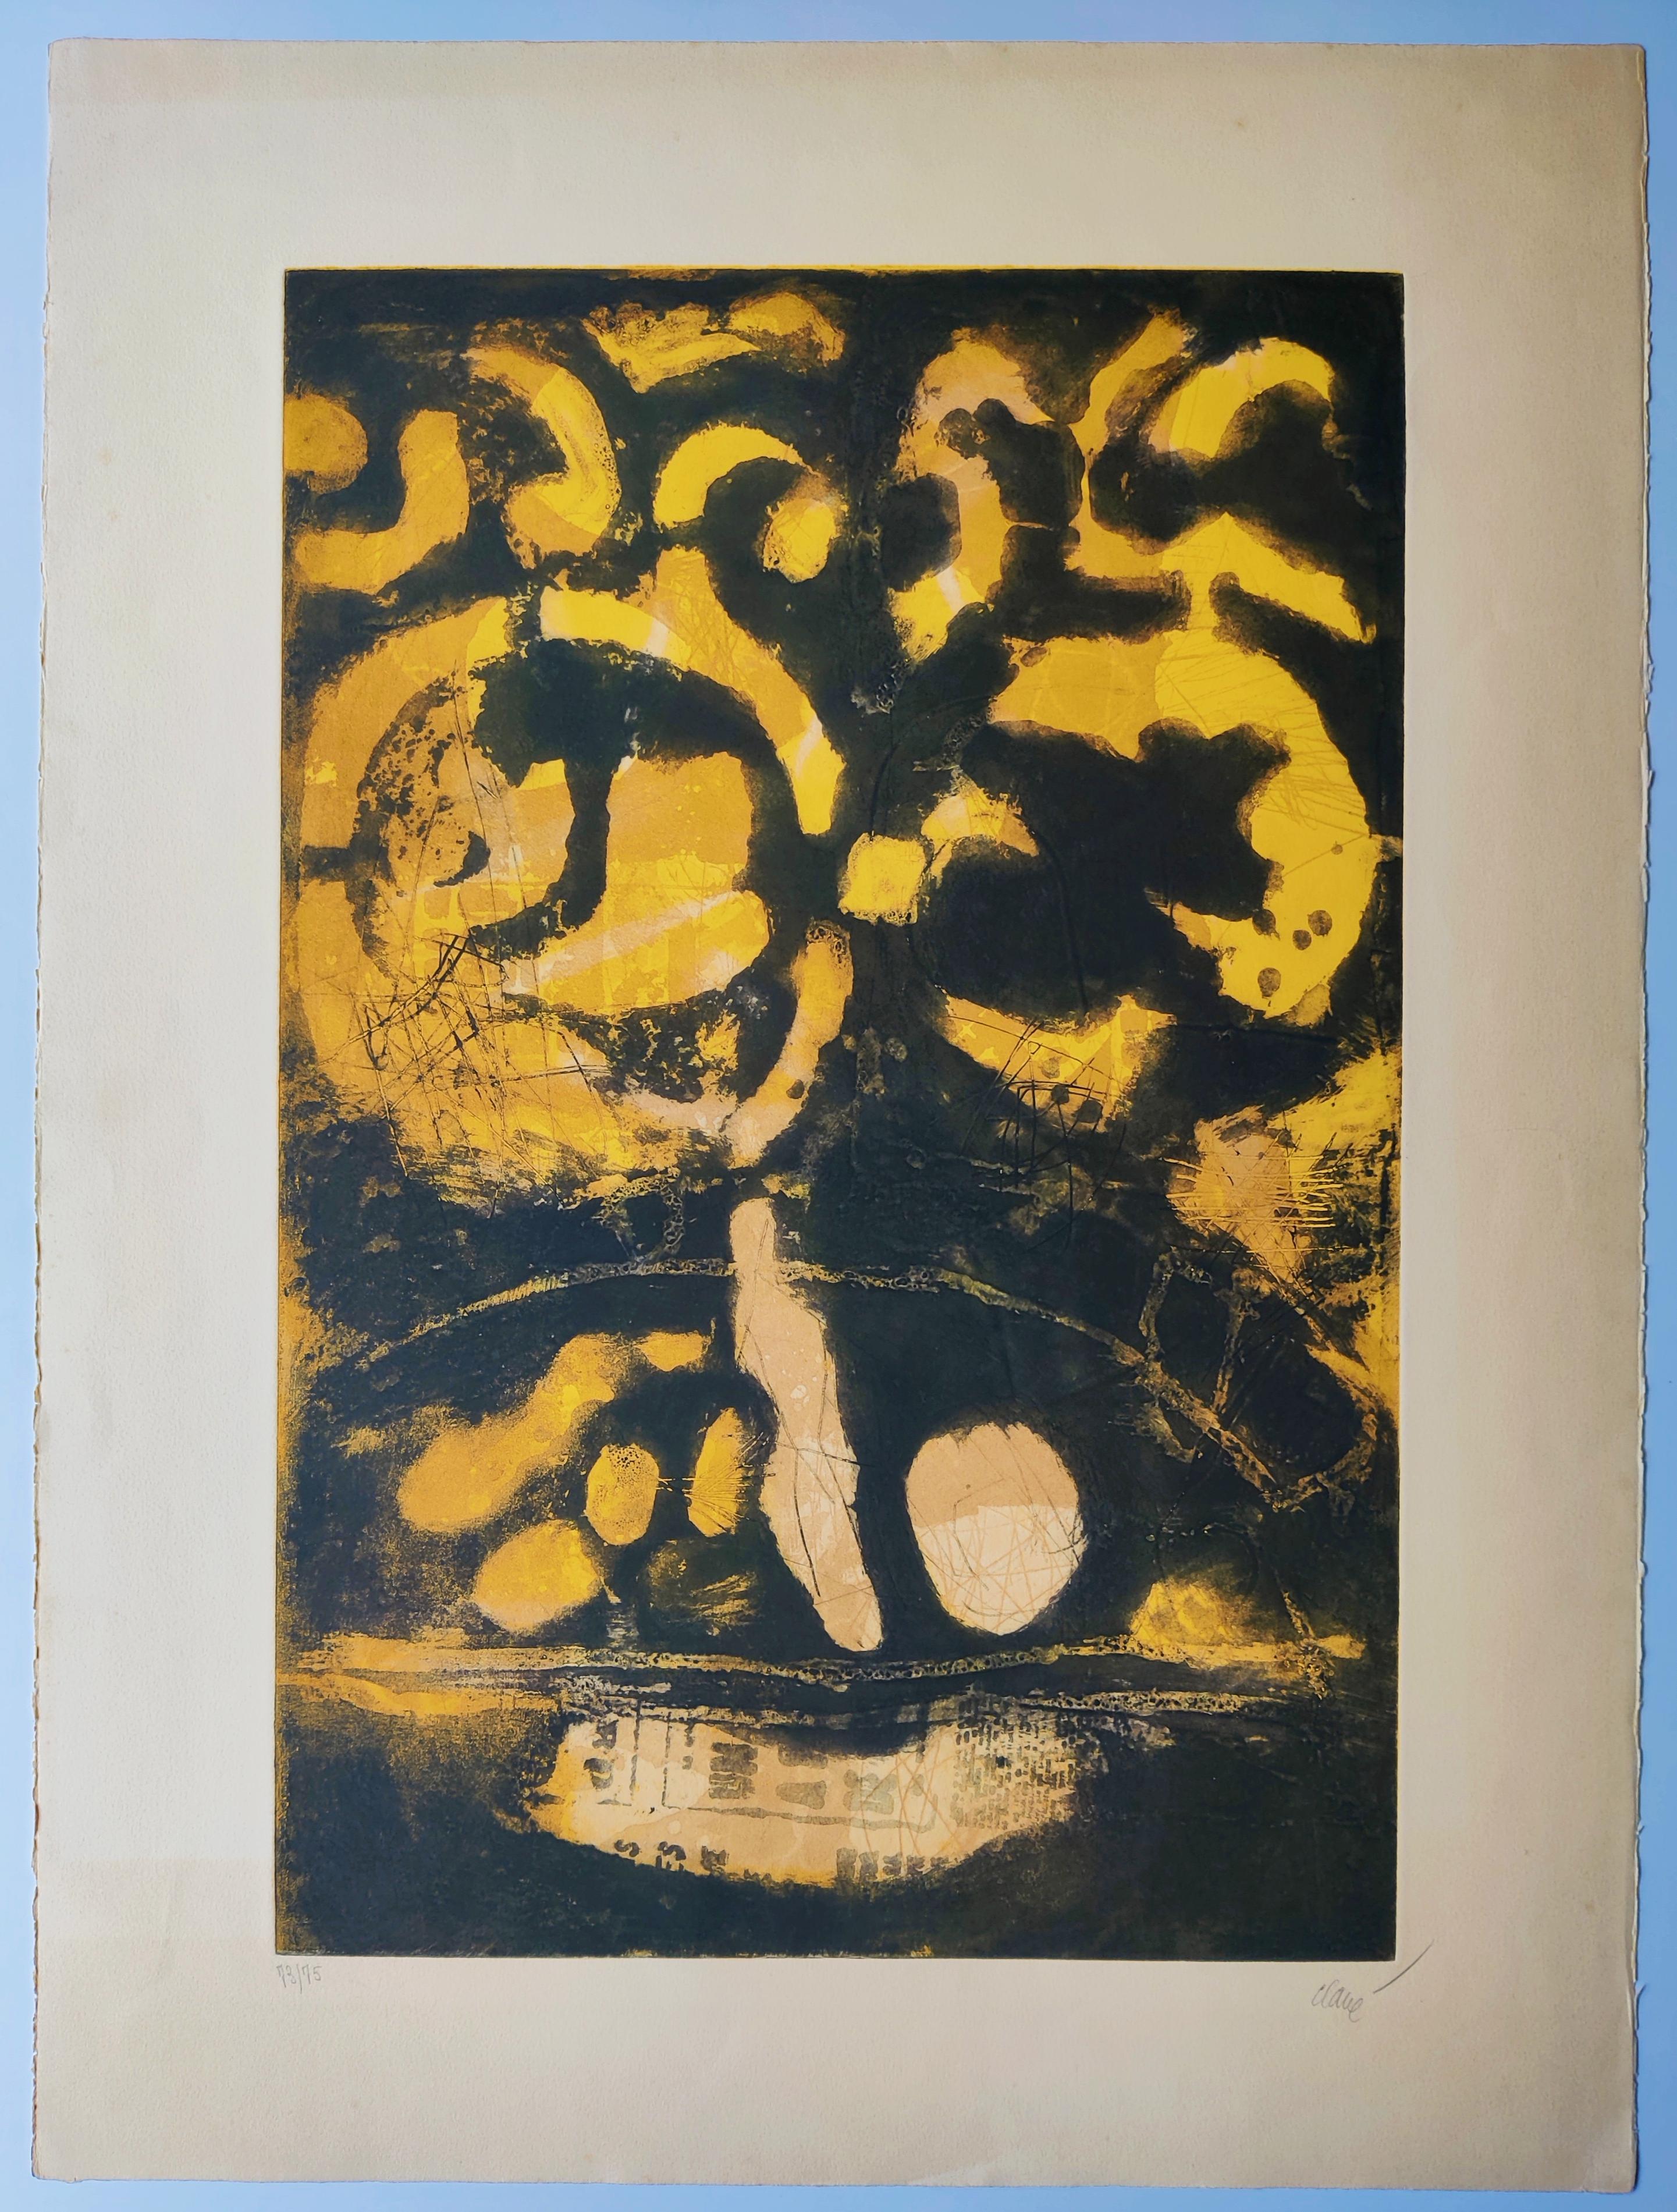 Antoni Clave
Guerrier, 1970
Eau-forte avec aquatinte, signée et numérotée au crayon
Édition : 73/75 en bas à gauche
Signé en bas à droite
Taille : 76 x 56 cm